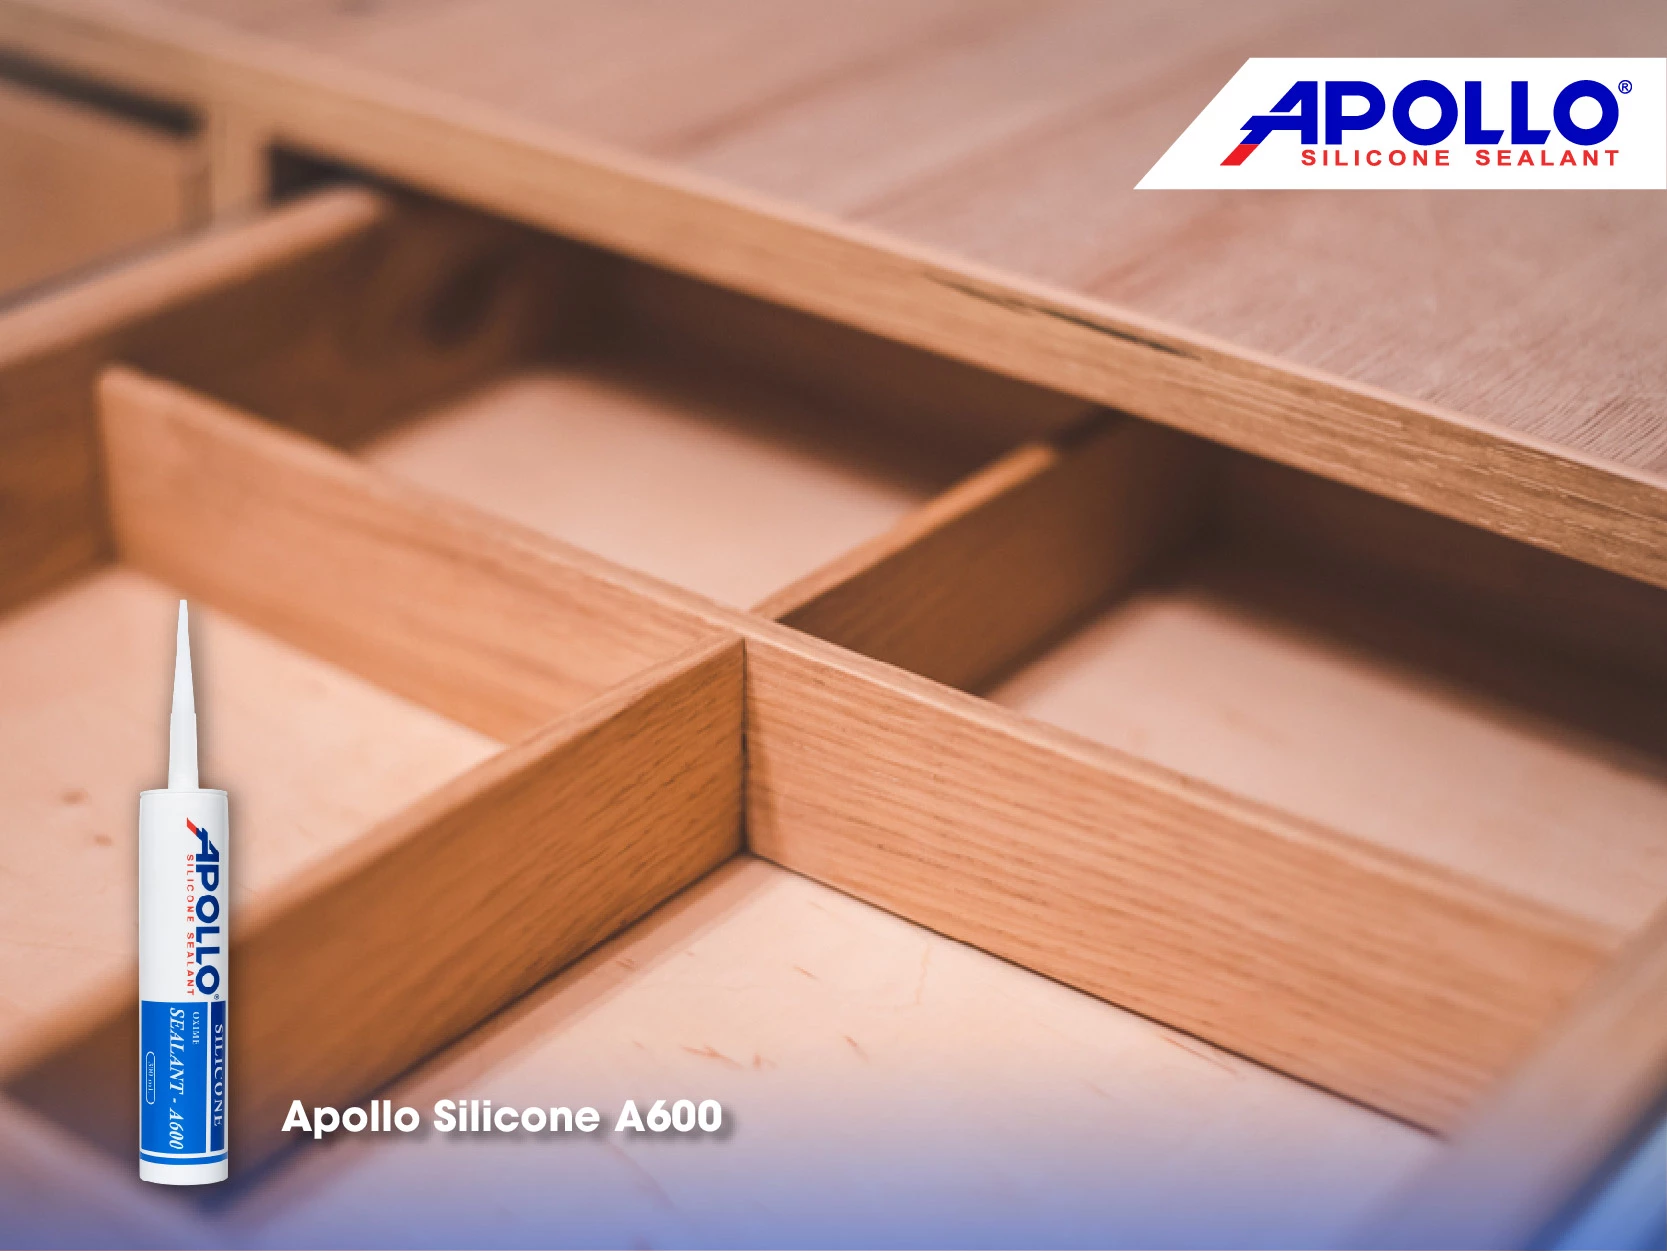 Chất keo silicone màu gỗ được dùng để trám, trét và dán những đồ nội thất gỗ